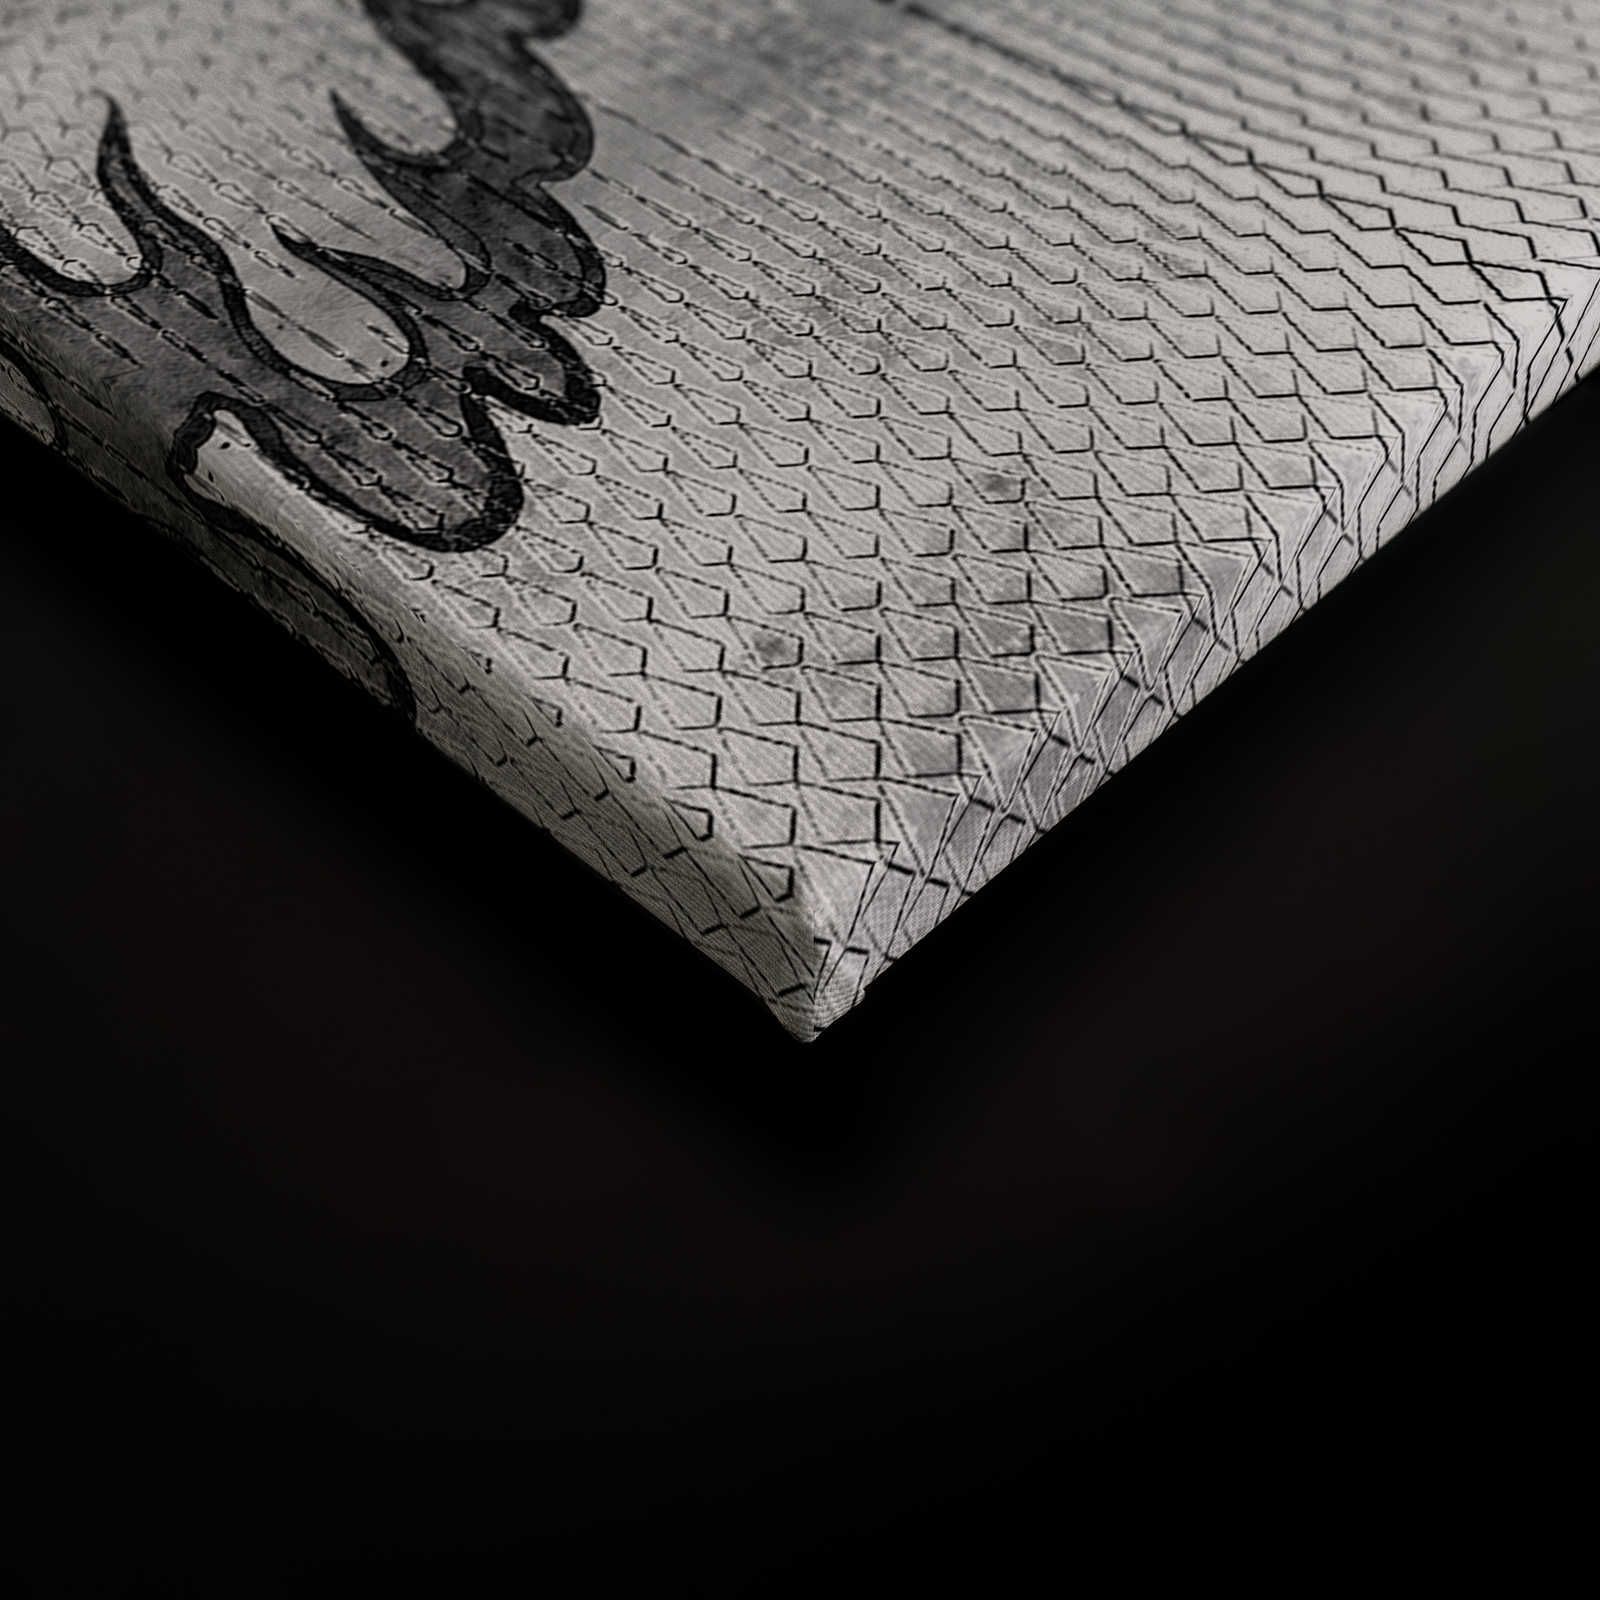             Shenzen 3 - Pittura su tela con drago argento metallizzato in stile asiatico - 0,90 m x 0,60 m
        